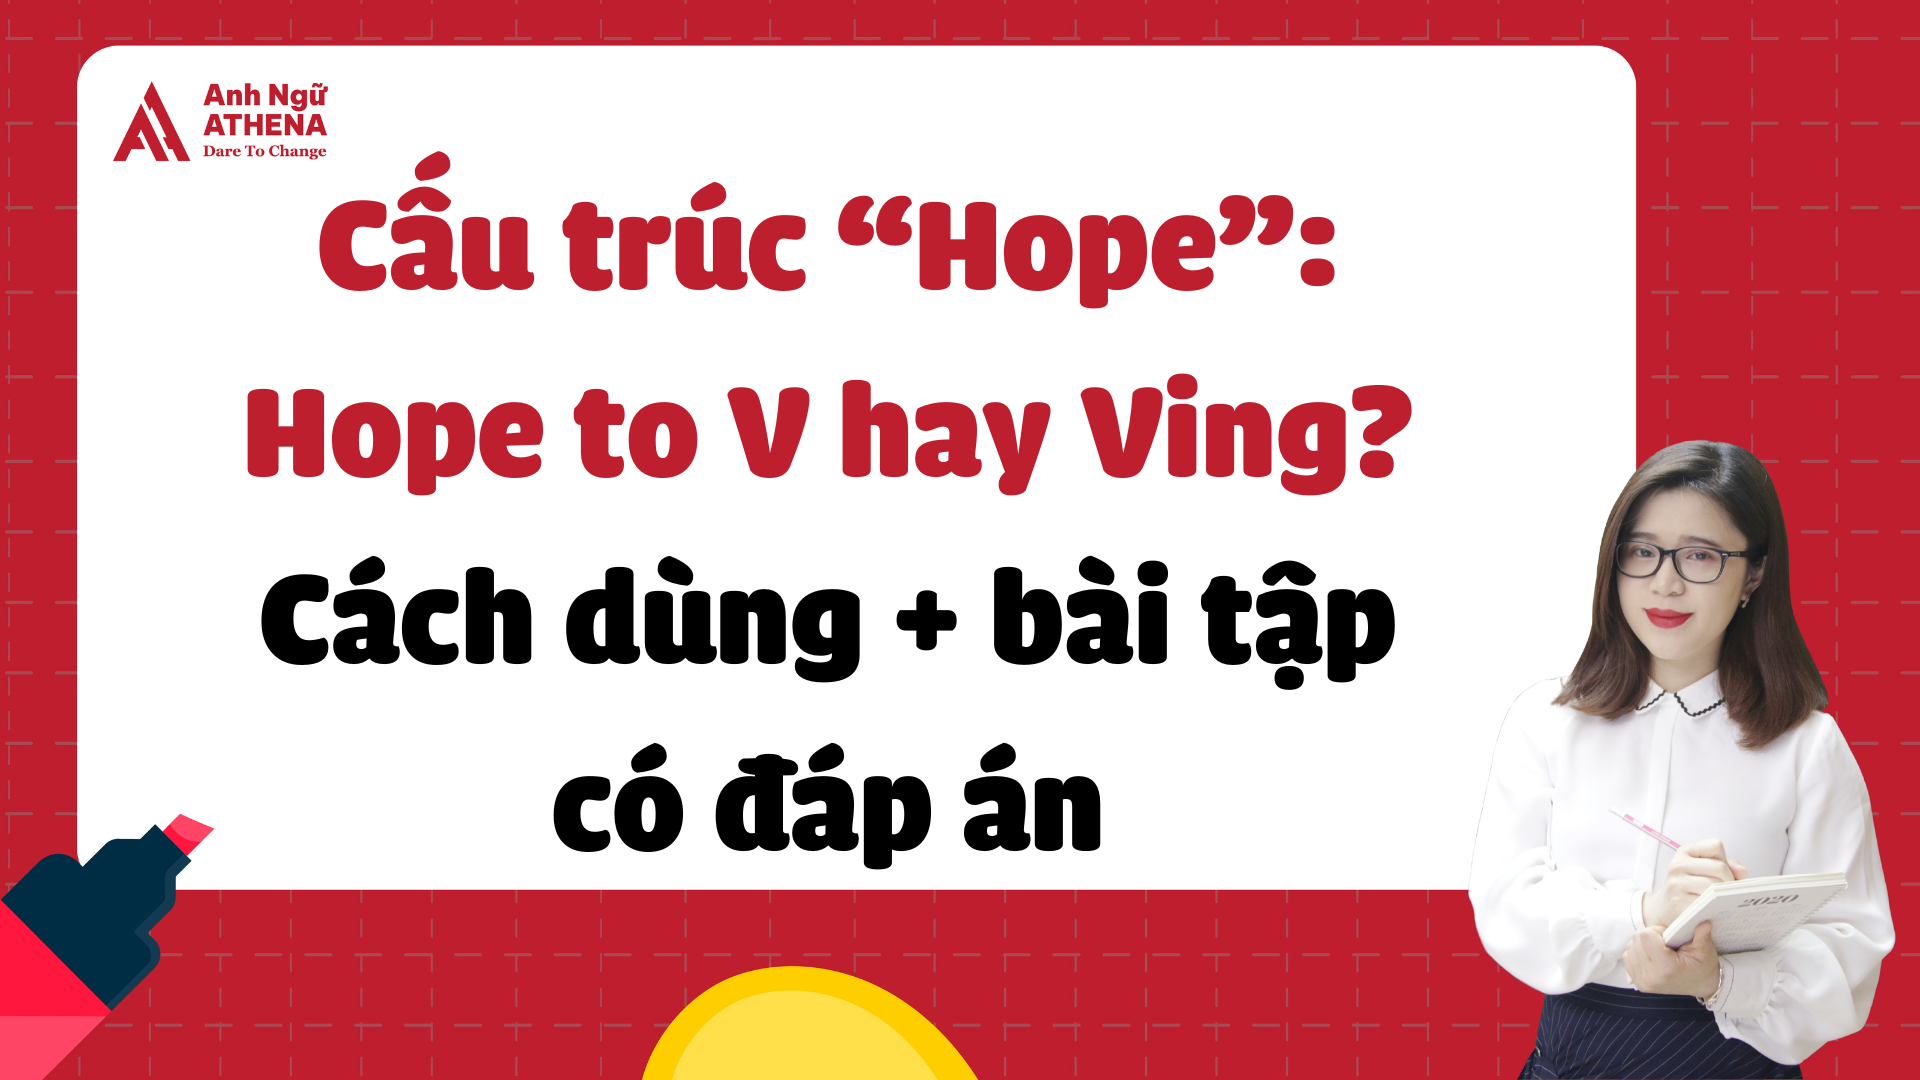 Cấu trúc “Hope”: Hope to V hay Ving? Cách dùng + bài tập có đáp án